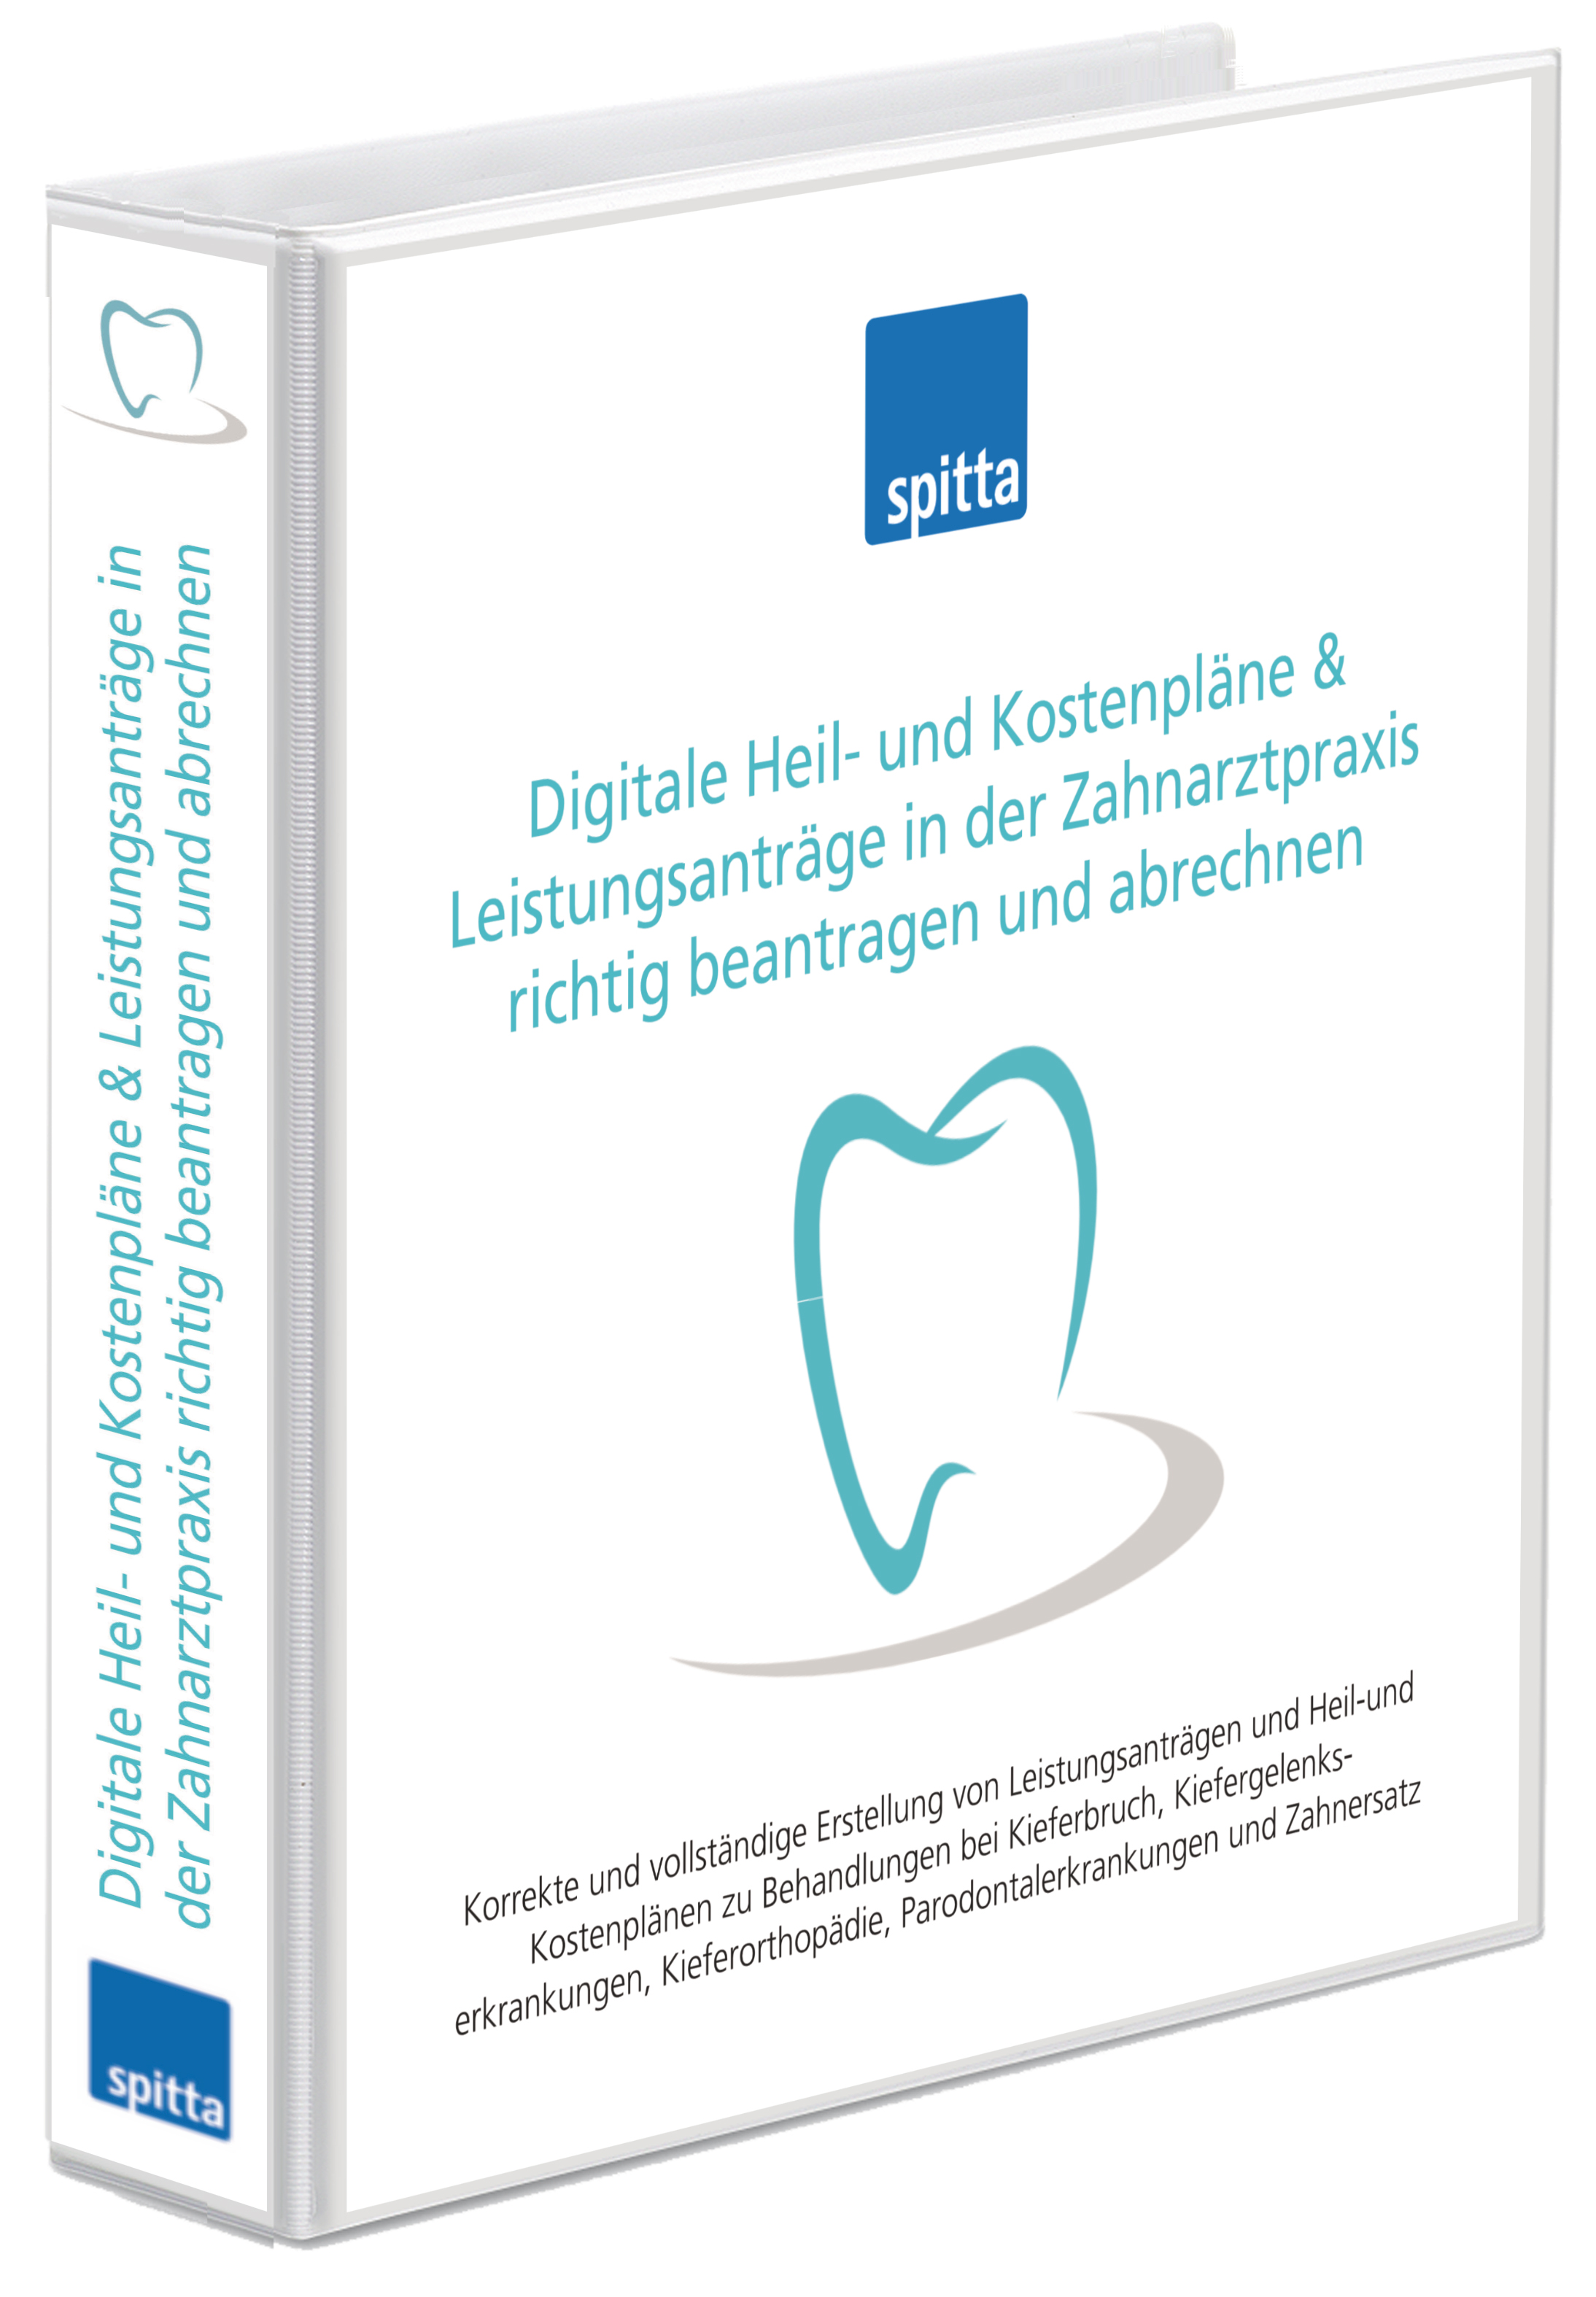 Digitale Heil- und Kostenpläne & Leistungsanträge in der Zahnarztpraxis richtig beantragen und abrechnen - Produkt